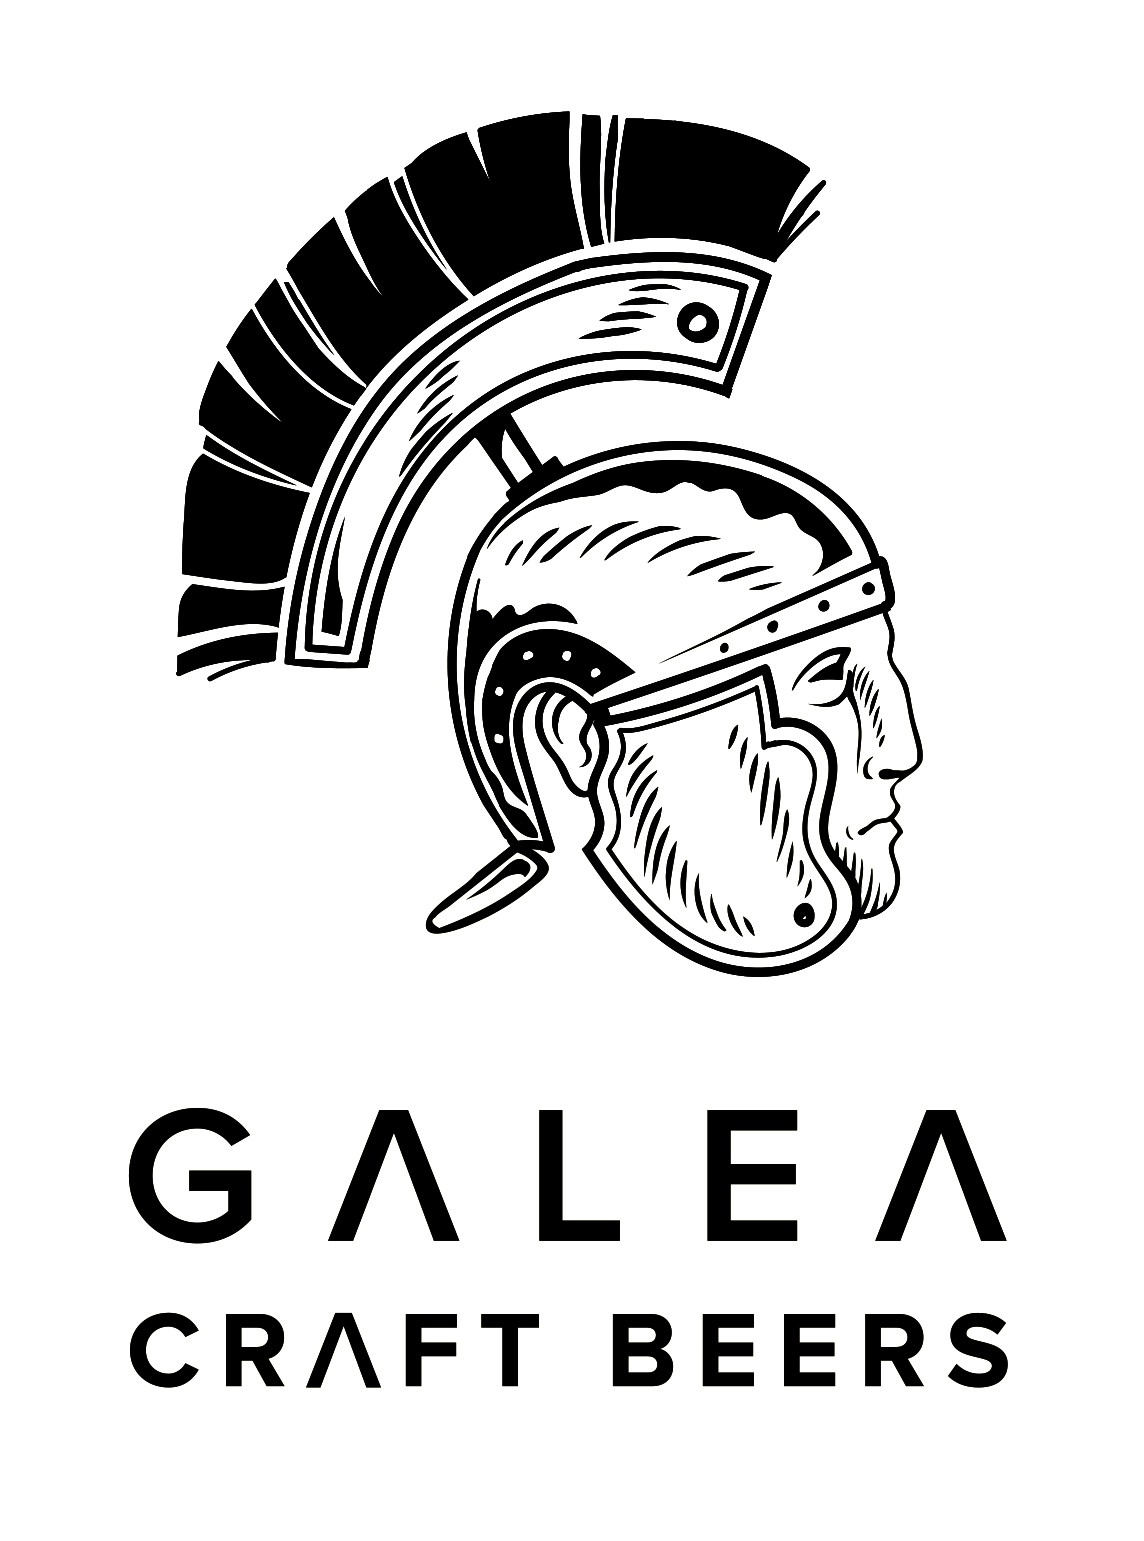 Galea Craft Beers